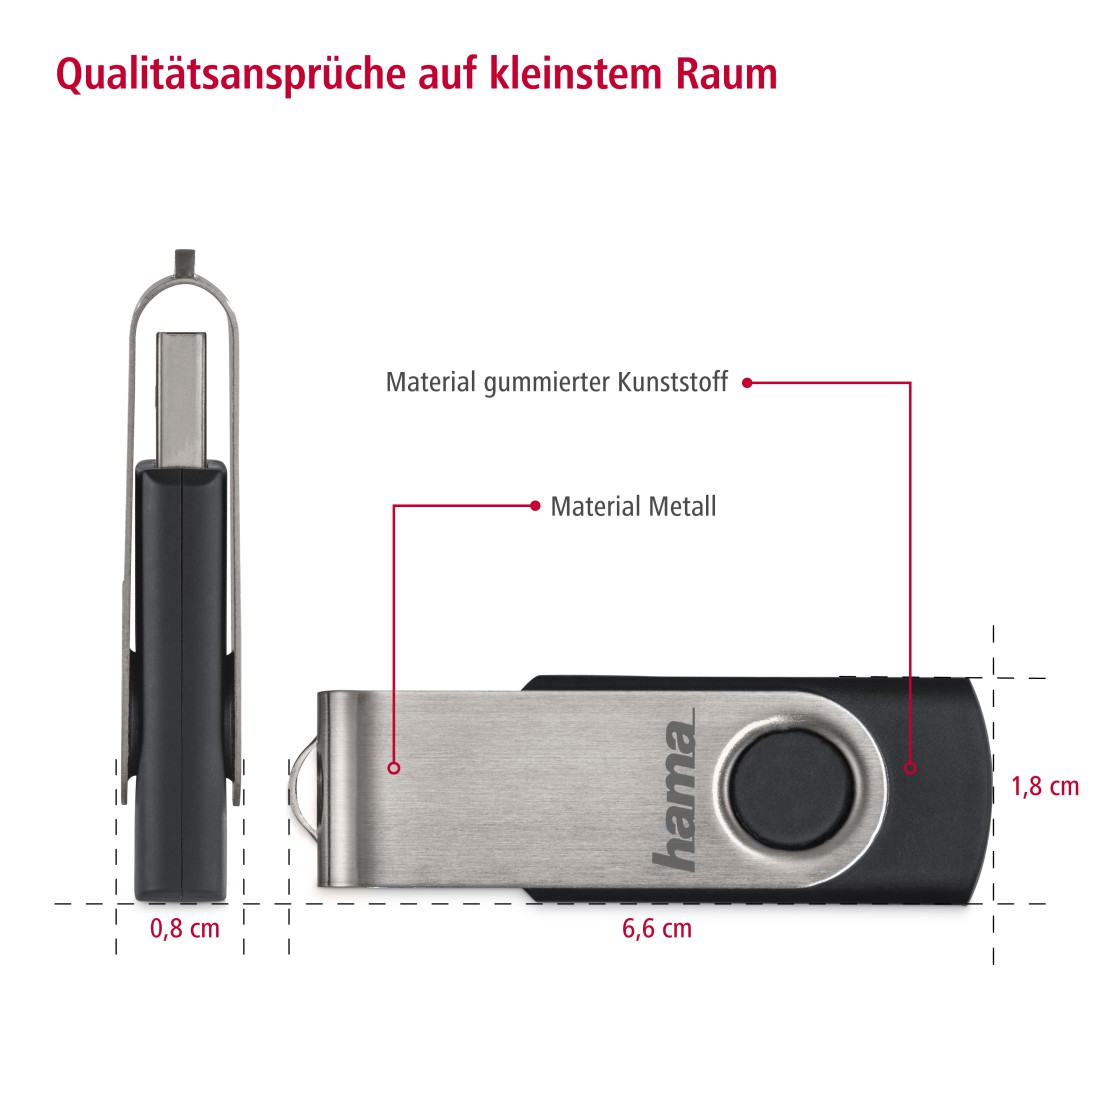 16 10 USB-Stick, MB/s, Schwarz/Silber HAMA GB, Rotate